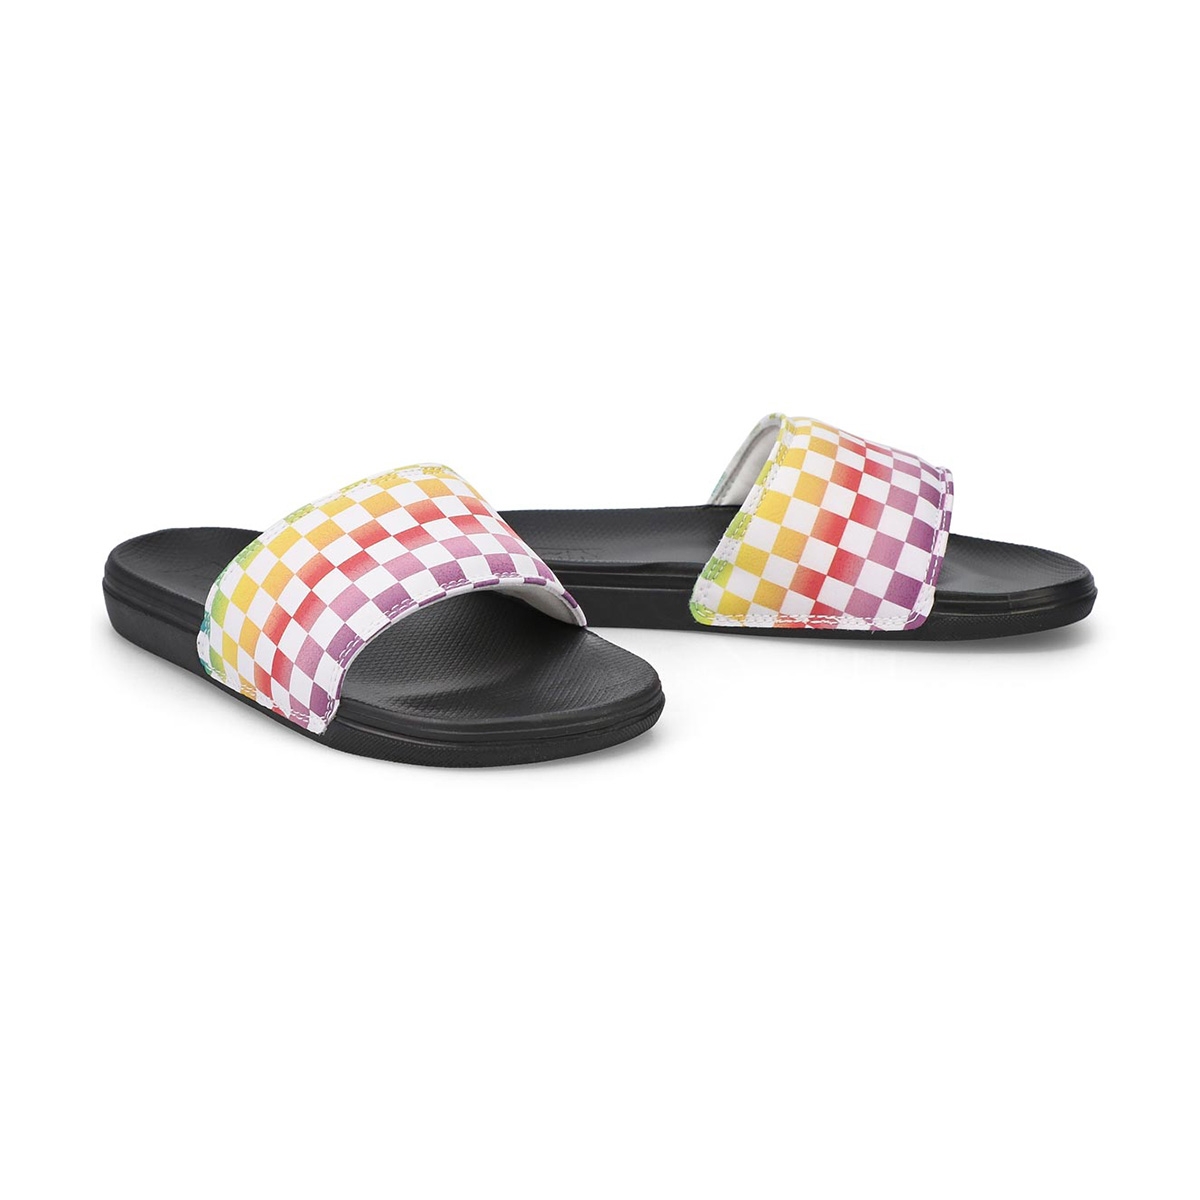 Vans Girls' Range Slide-On Sandal - Rainbow/B | SoftMoc.com